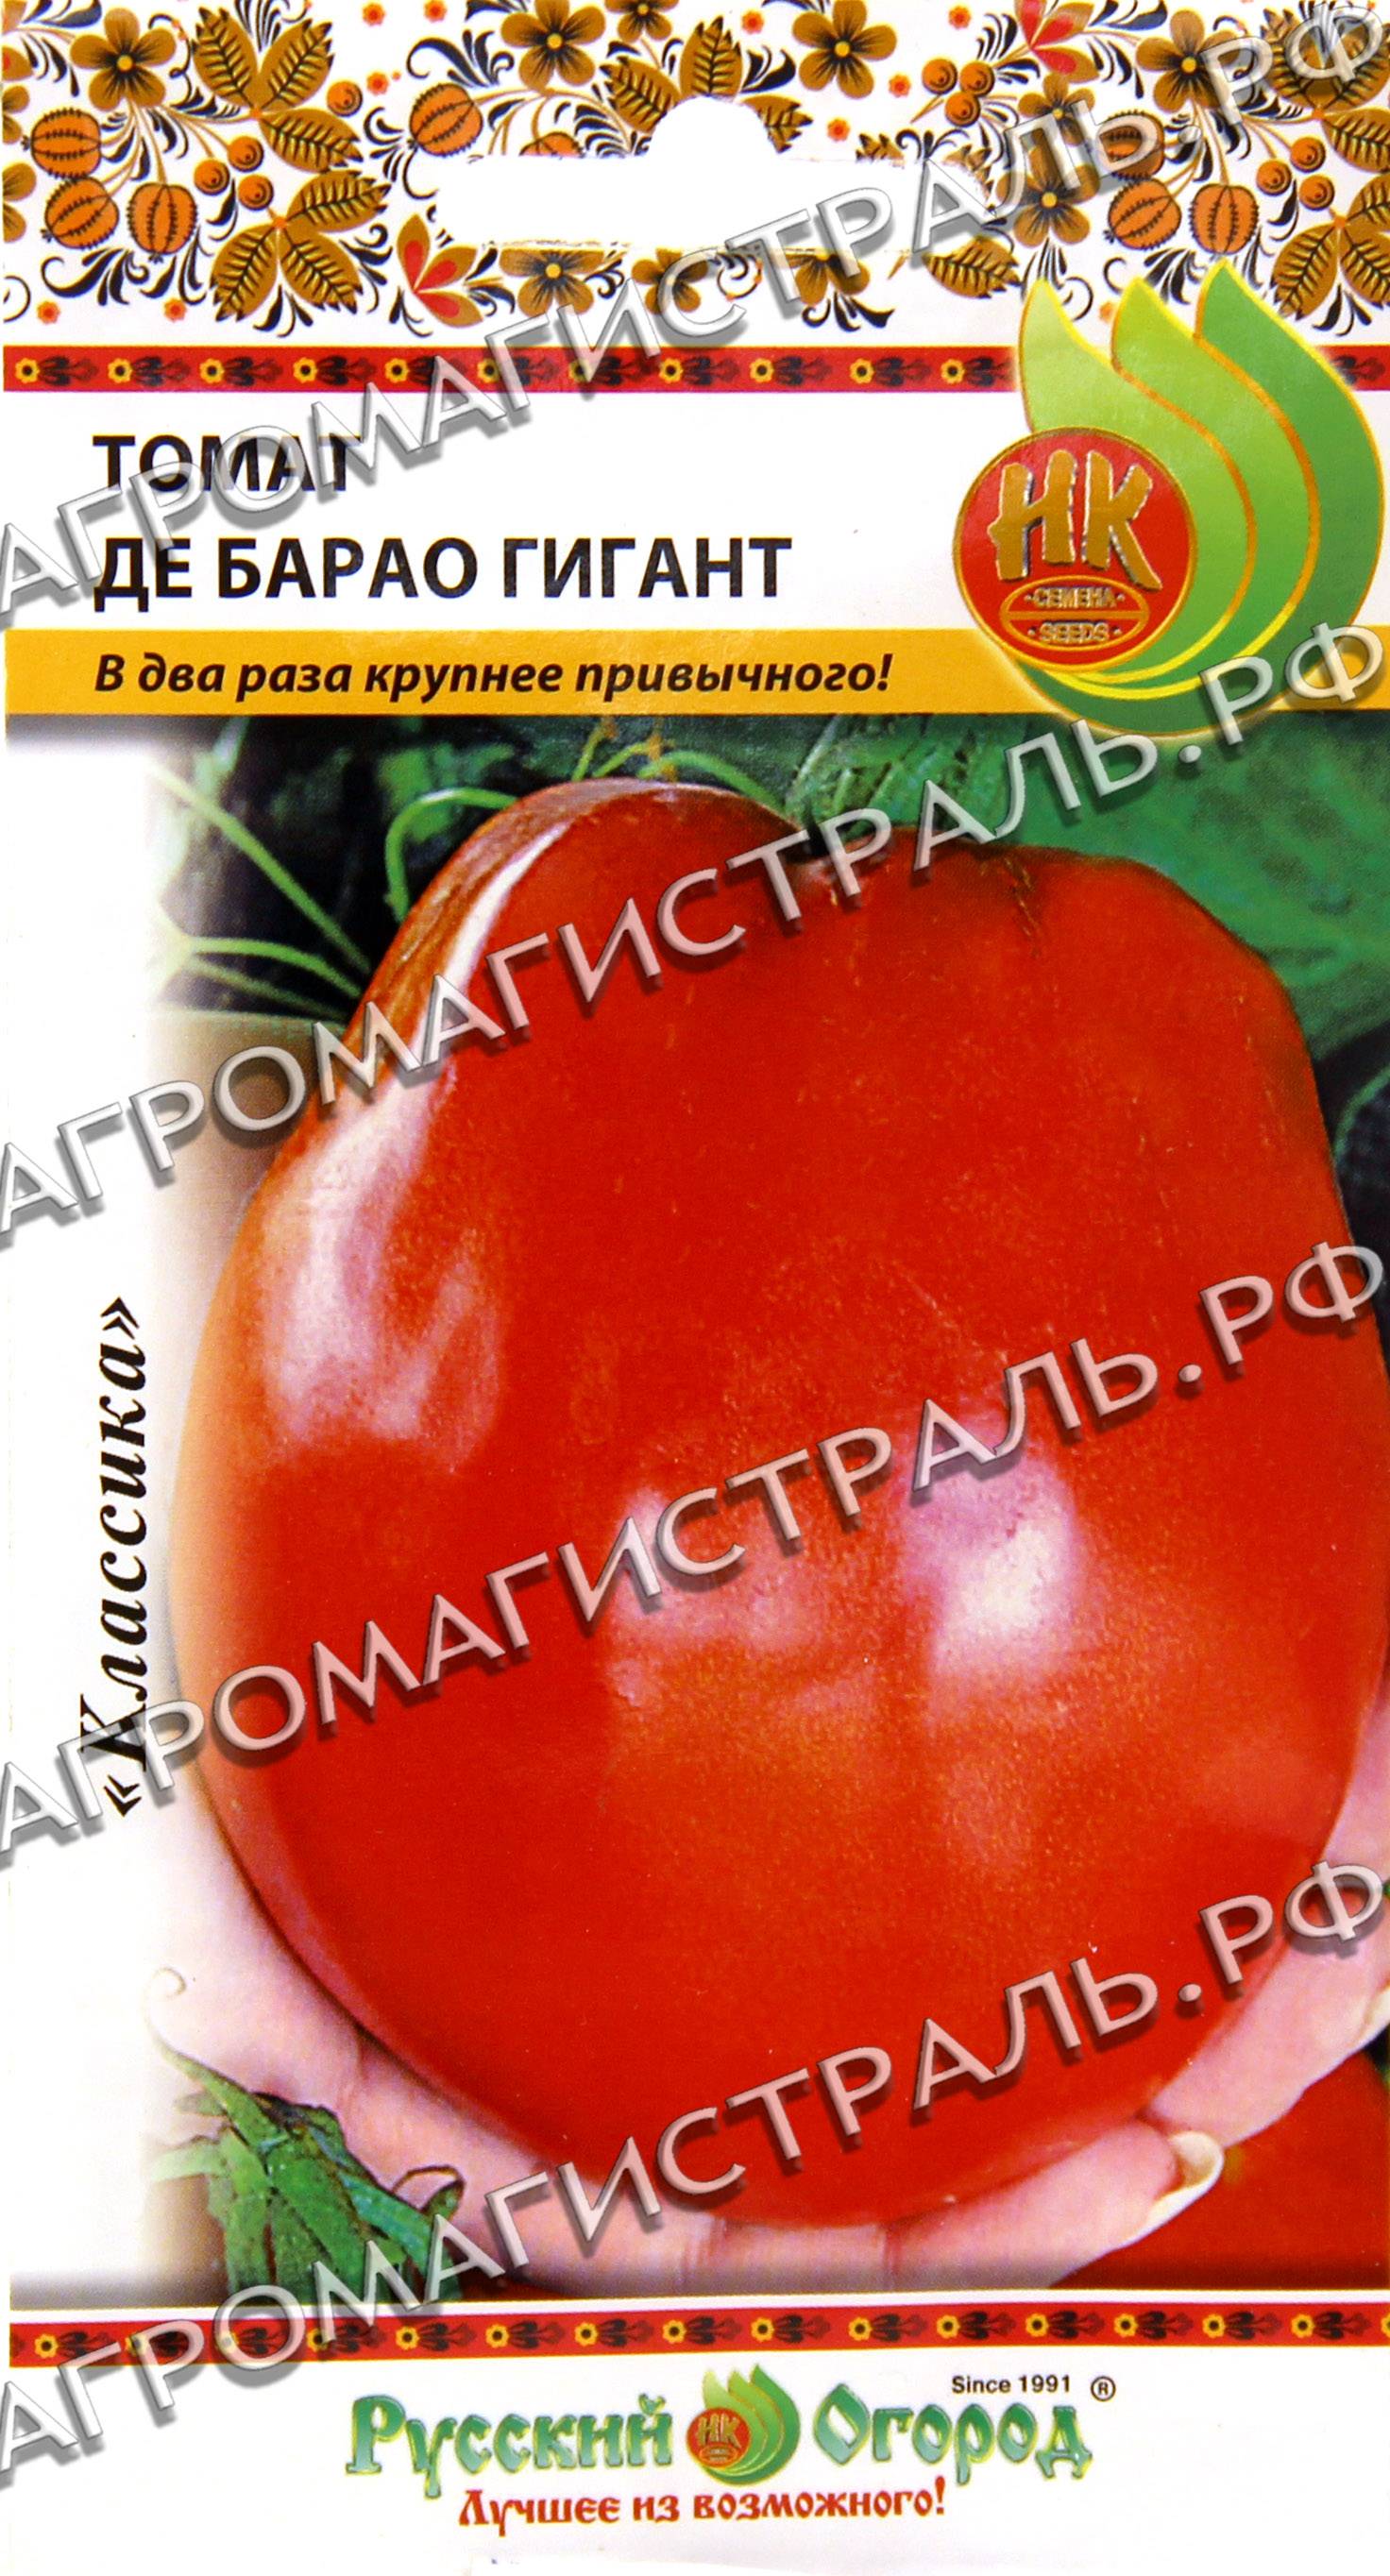 Характеристика и описание томата “де барао”: фото и отзывы